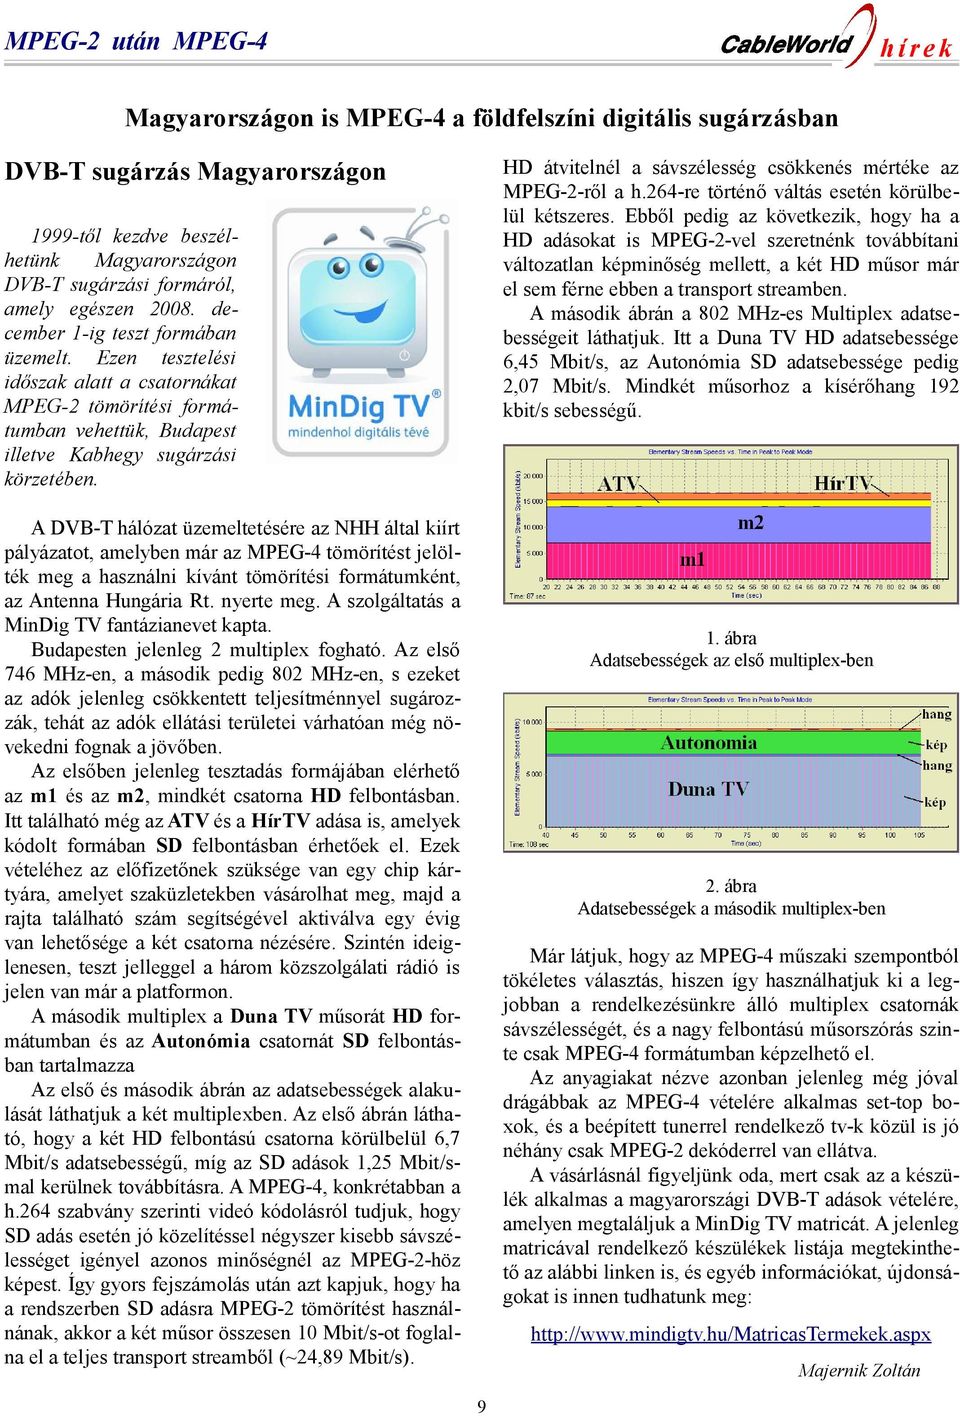 A DVB-T hálózat üzemeltetésére az NHH által kiírt pályázatot, amelyben már az MPEG-4 tömörítést jelölték meg a használni kívánt tömörítési formátumként, az Antenna Hungária Rt. nyerte meg.